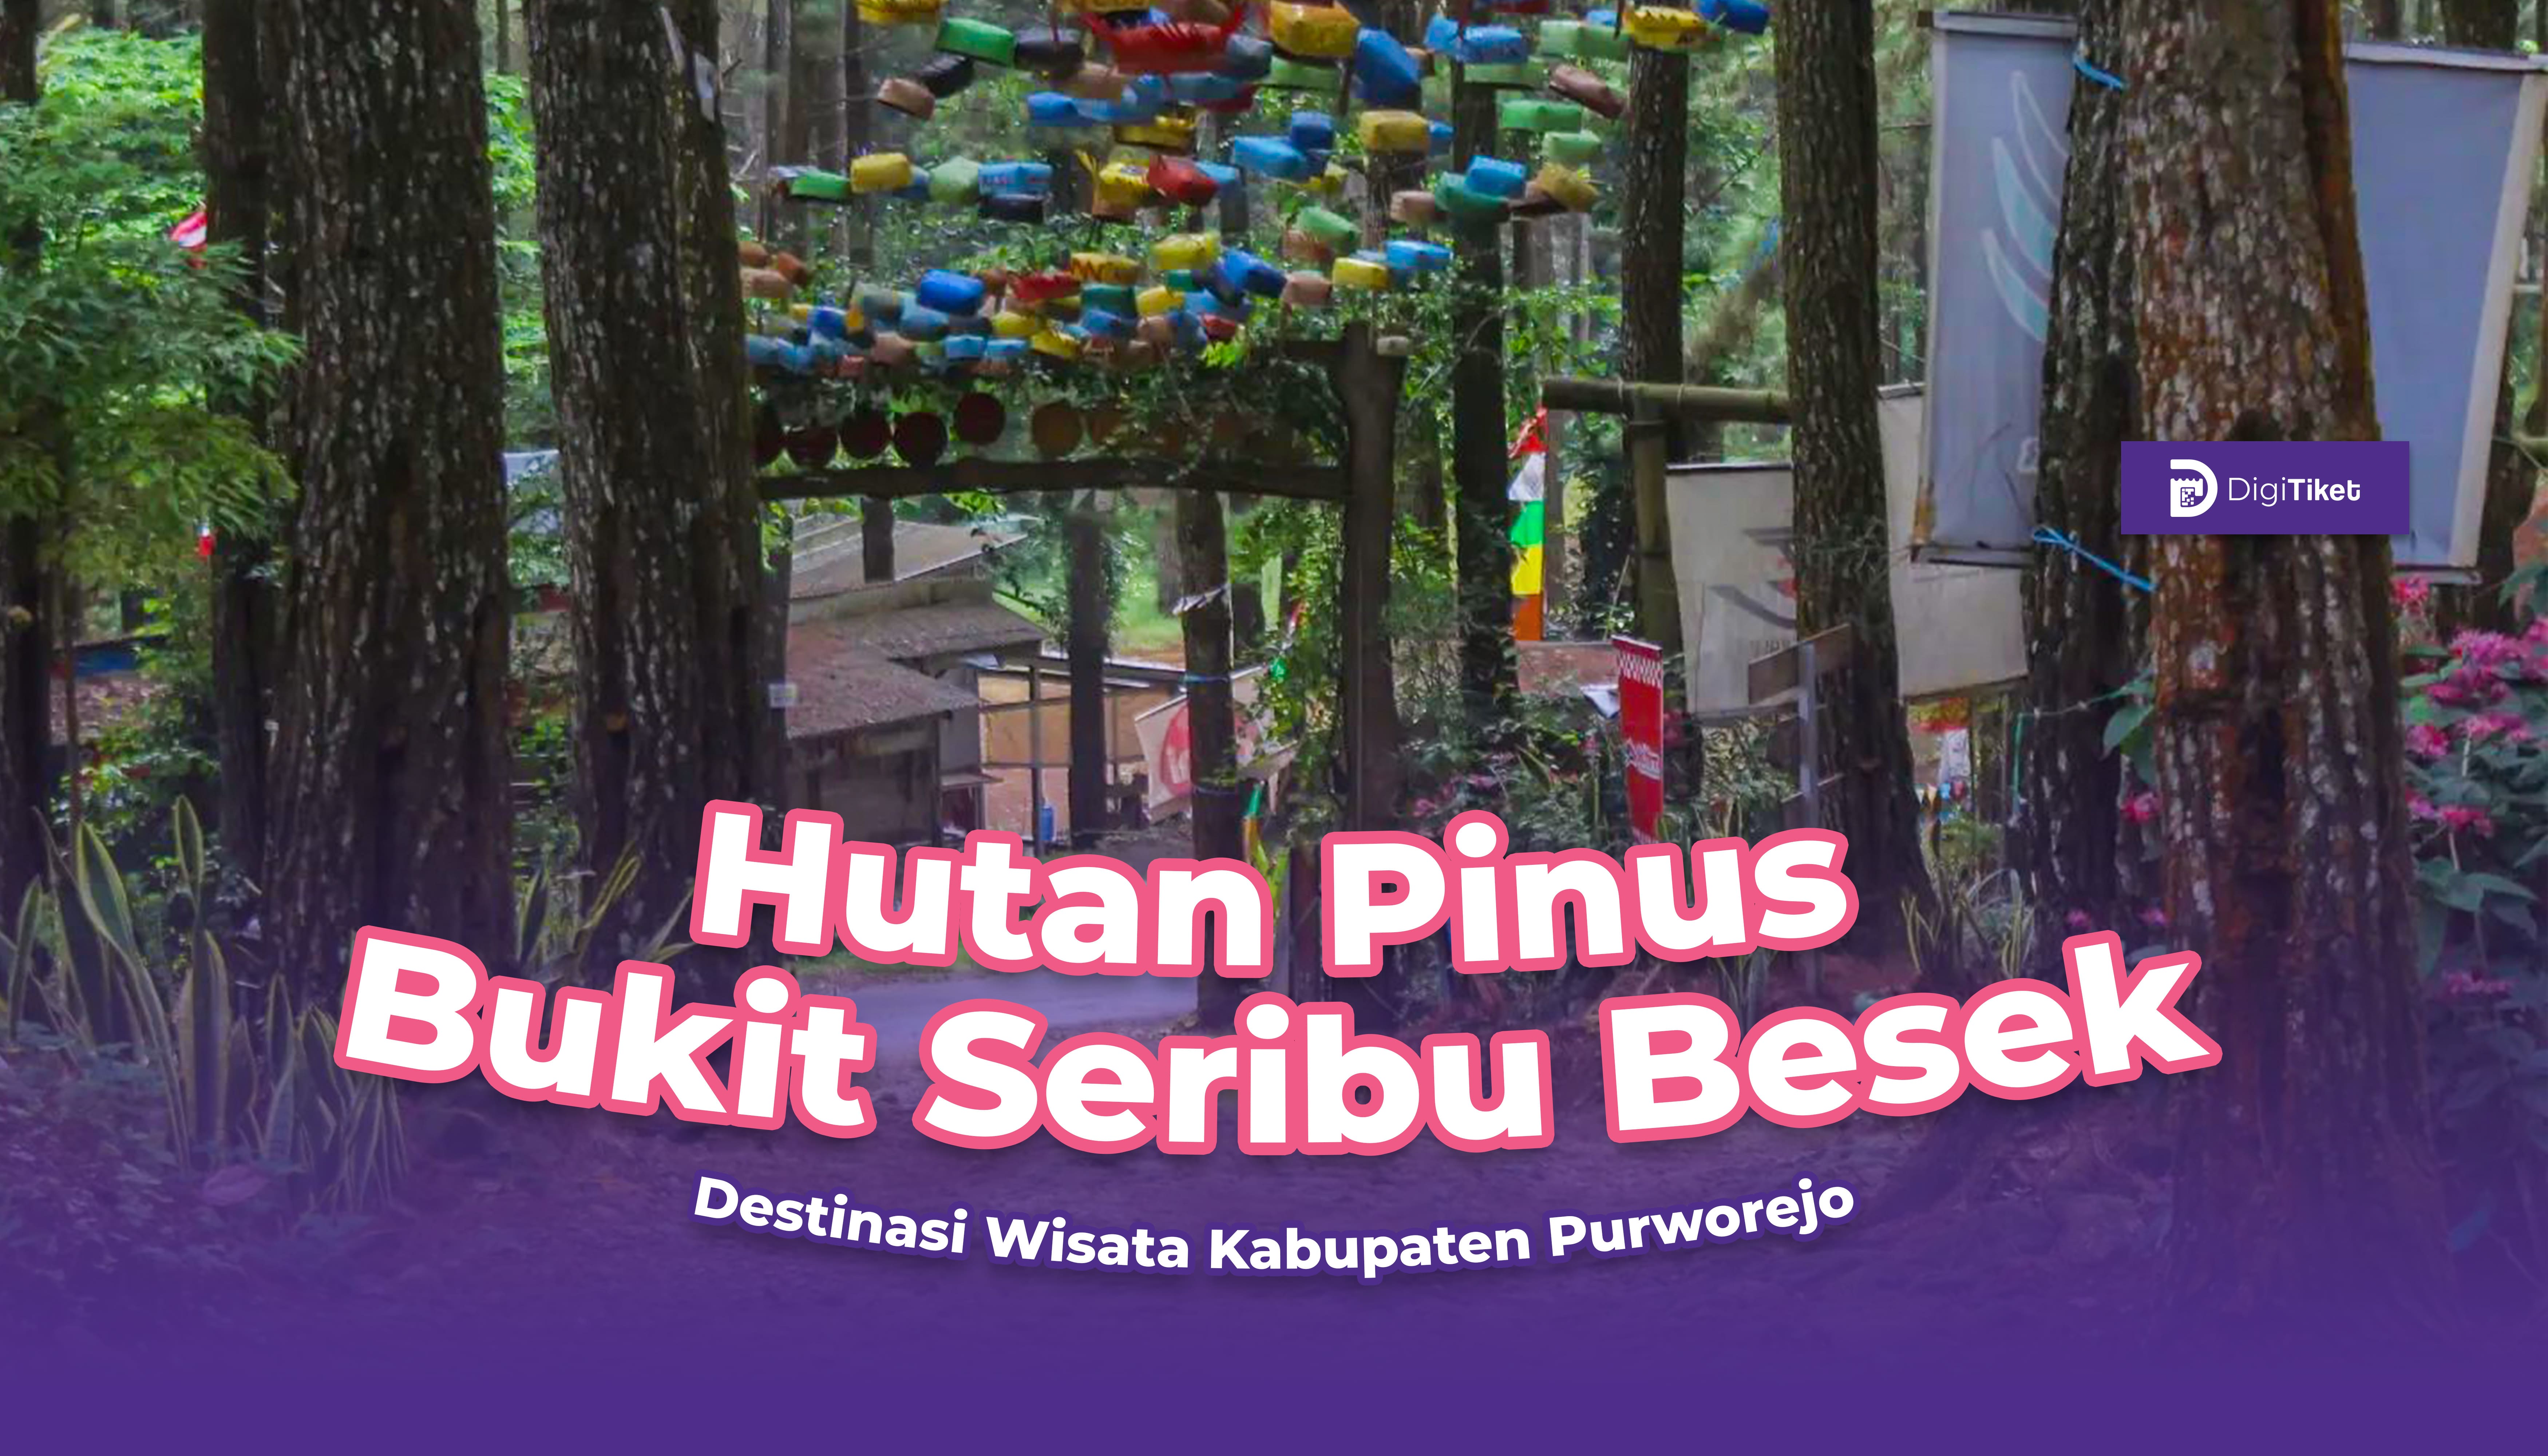 Wisata hutan pinus Bukit Seribu Besek